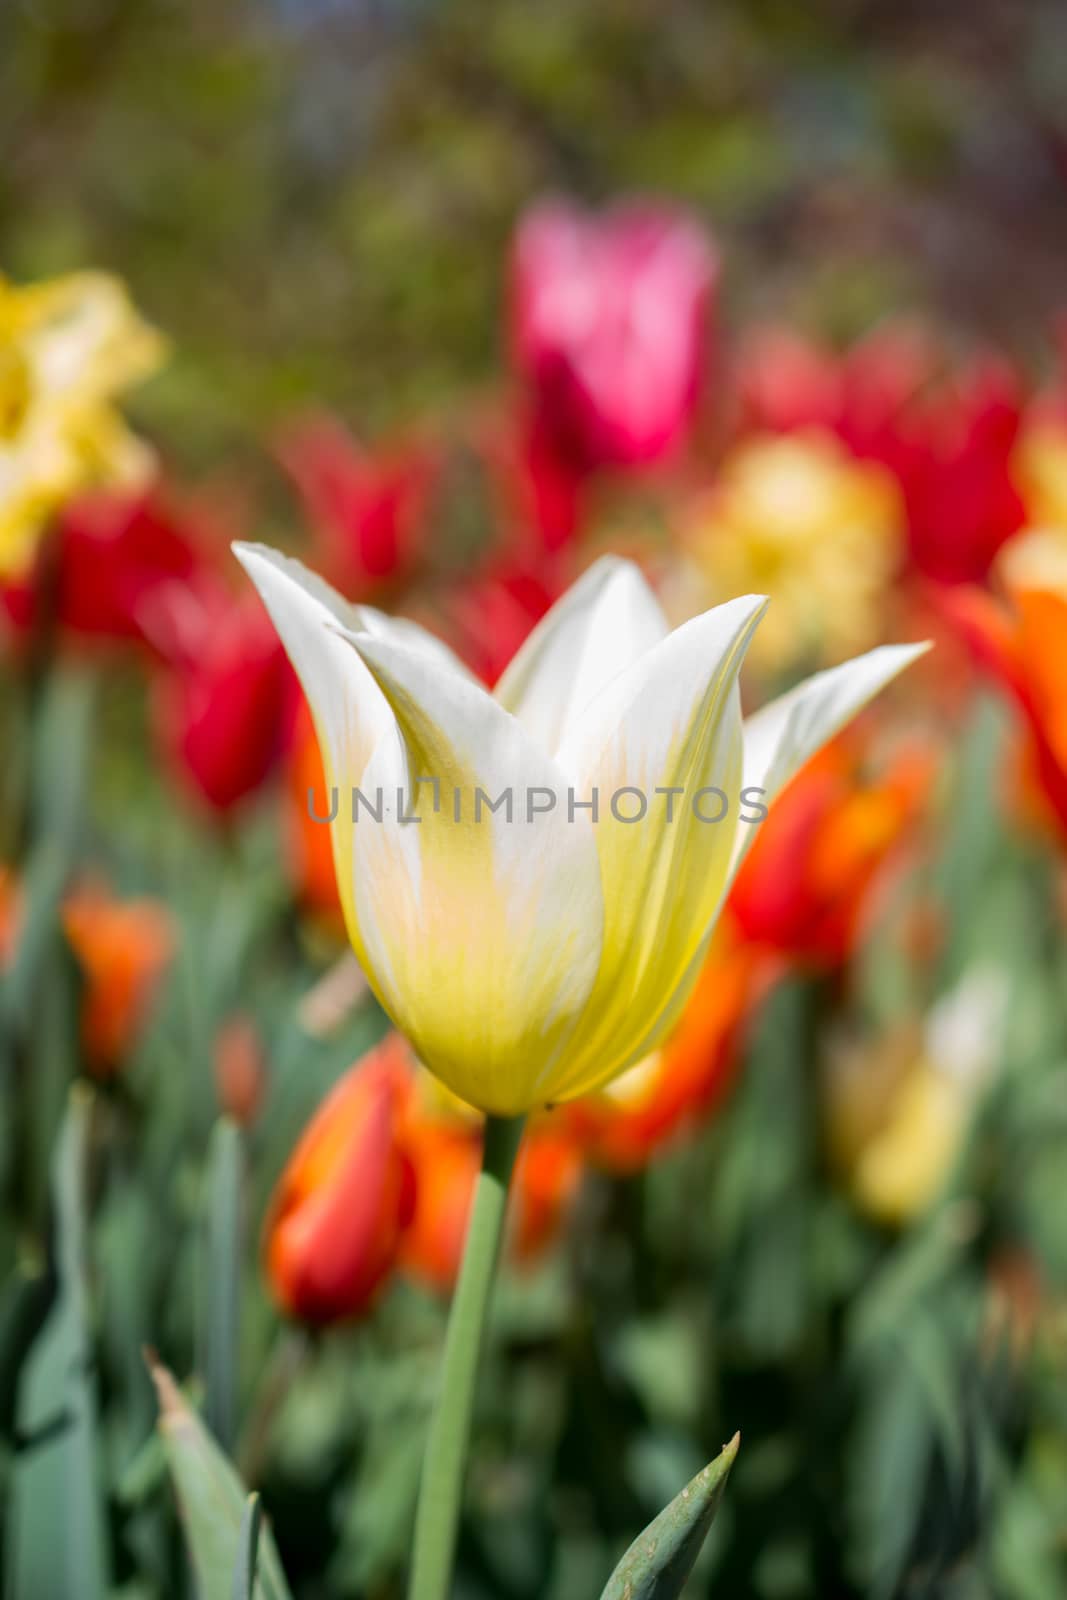 Tulips bloom in the spring season by berkay